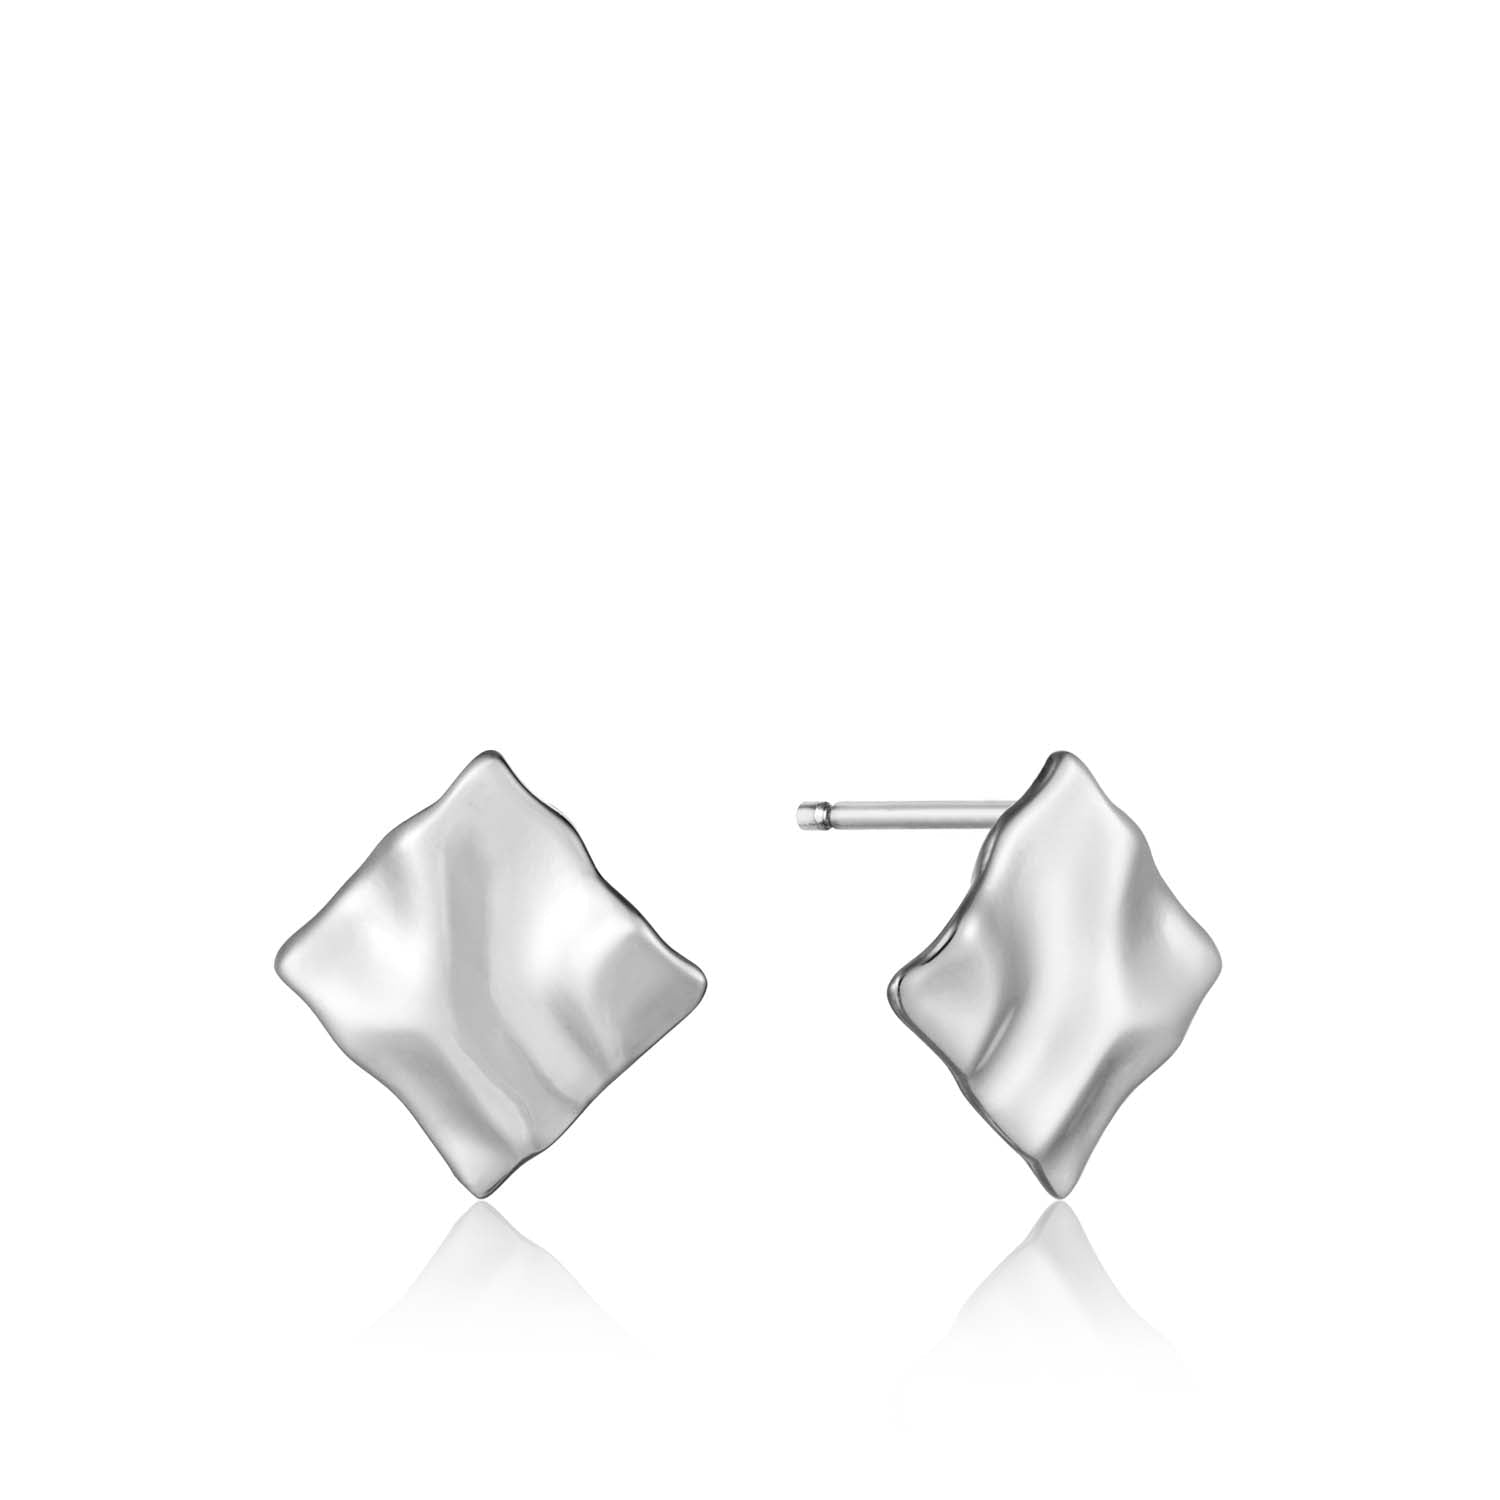 Ania Haie Crush Mini Square Stud Earrings - Silver Earrings Ania Haie 